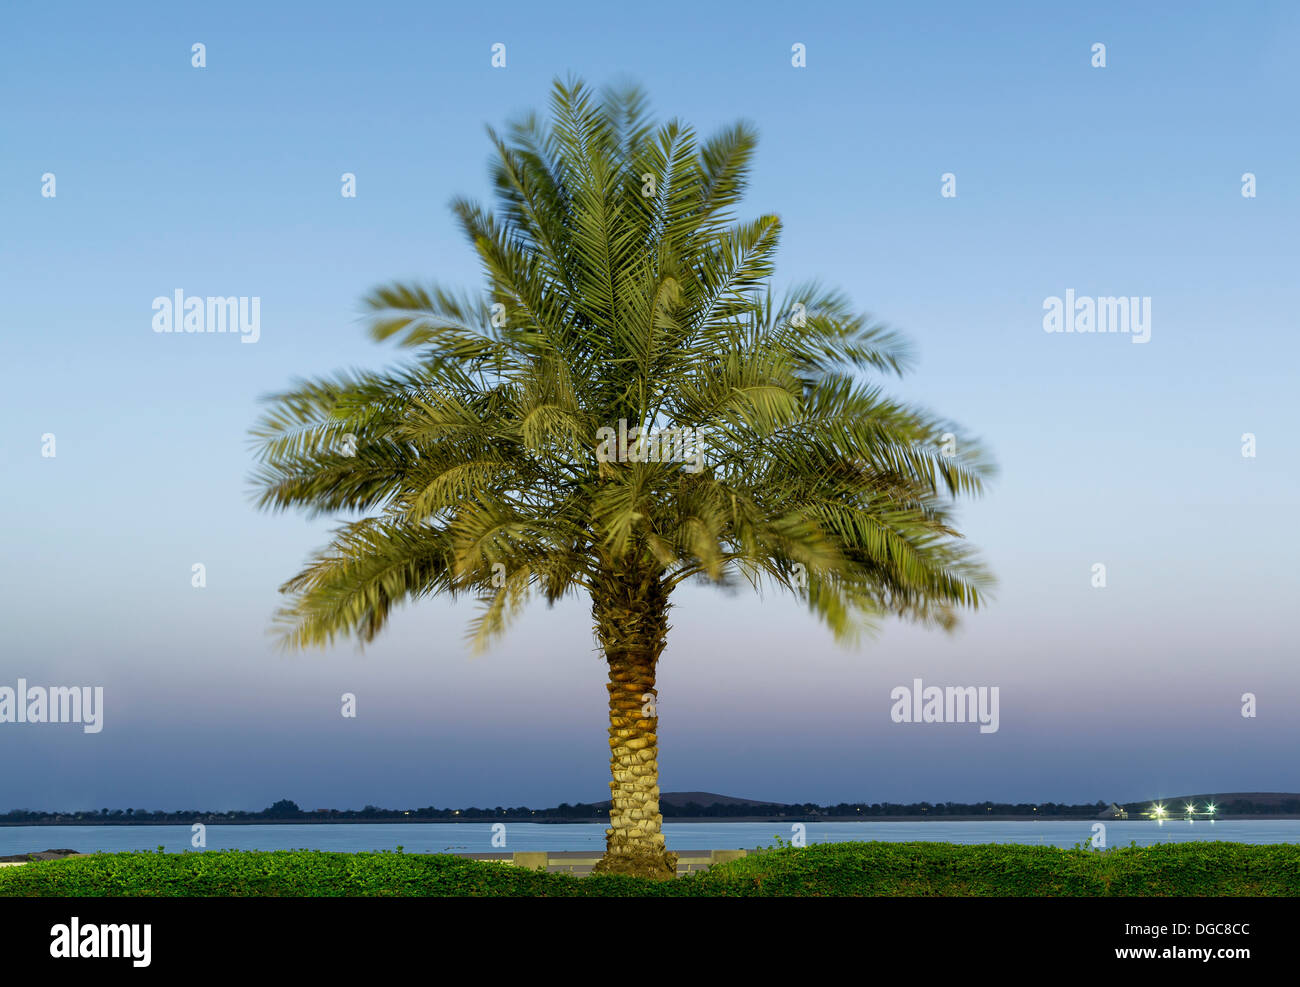 Date palm tree, Adu Dhabi, United Arab Emirates Stock Photo